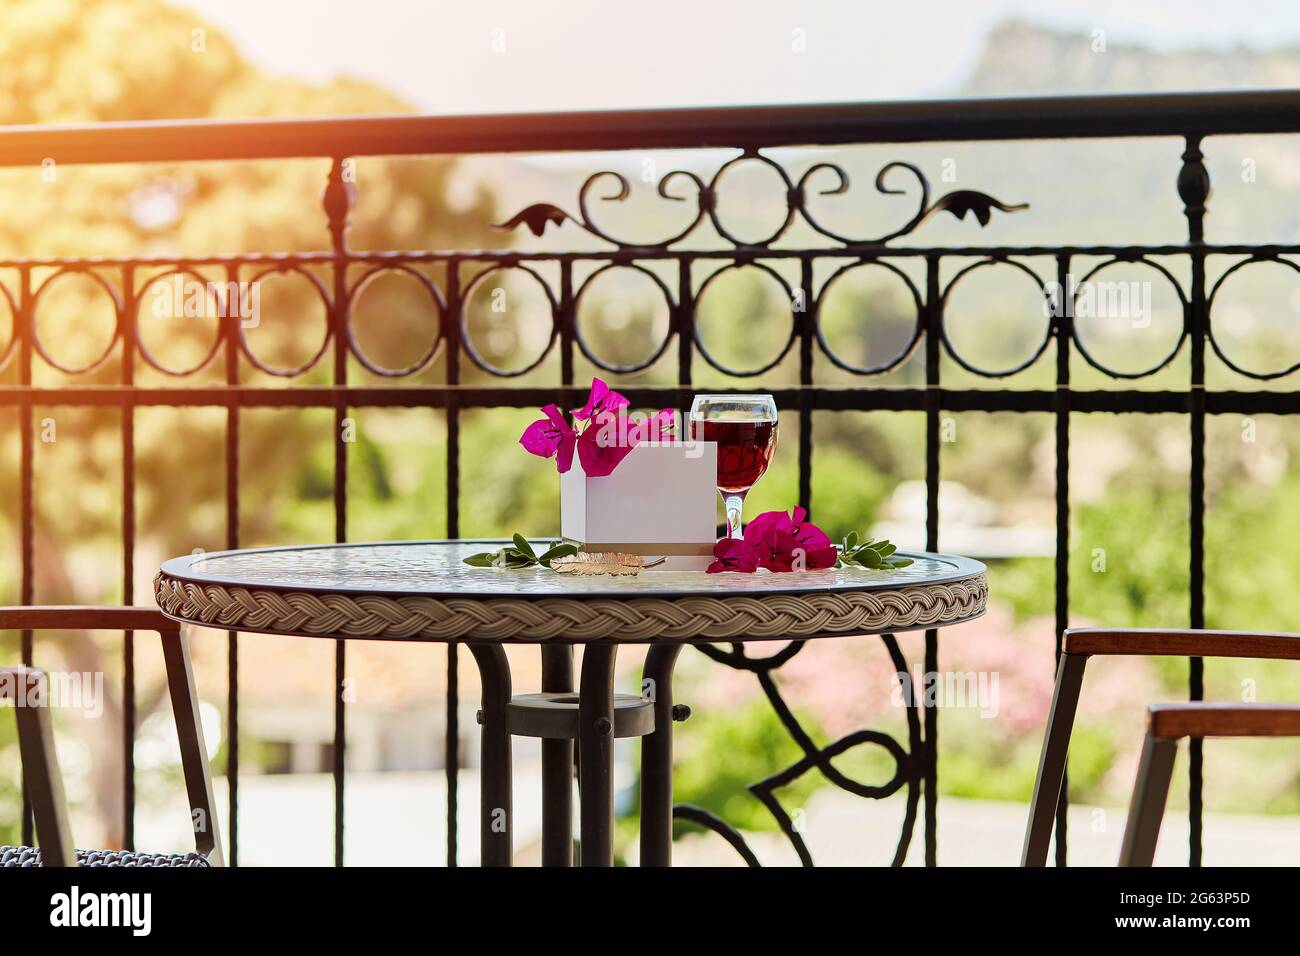 Elegantes Glas Rotwein. Dekorative rosa Blüten von Bougainvillea. Nachbau einer Postkarte oder Einladung. Festliches Weihnachtskonzept. Dekorative grüne Leine Stockfoto